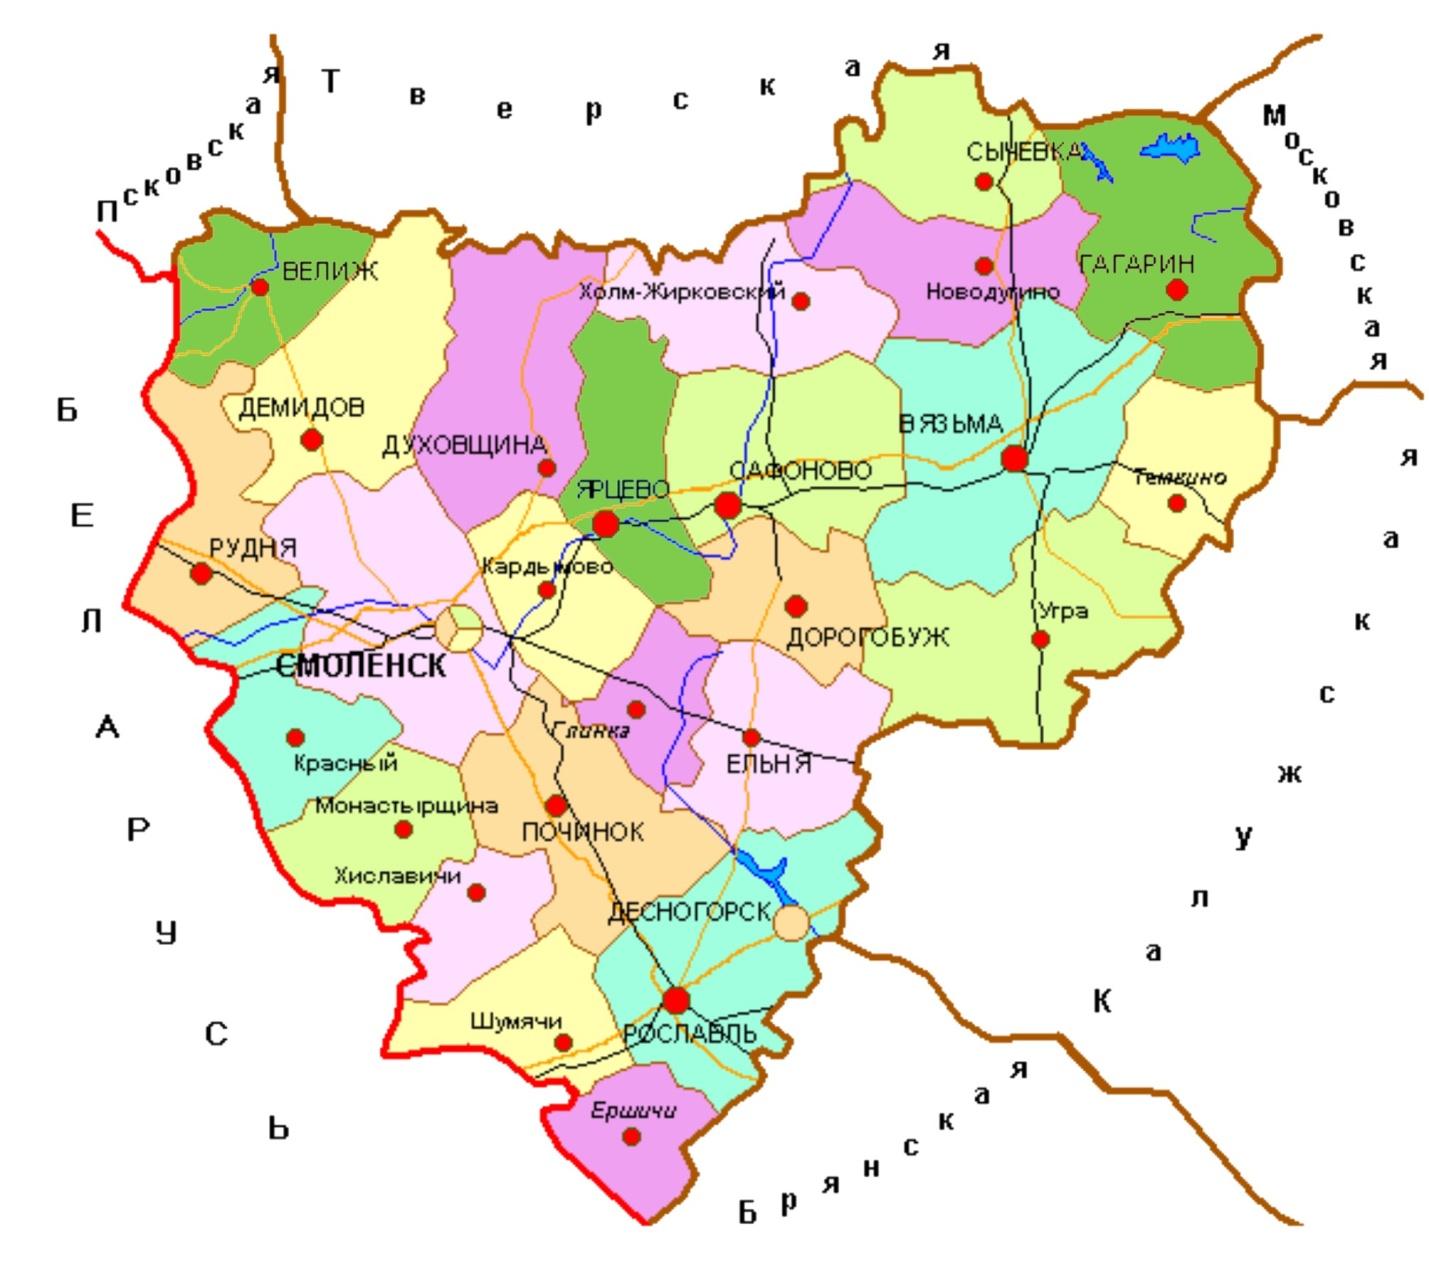 Города окружающие смоленск. Смоленская область граничит. Смоленская область границы. Смоленск и Смоленская область на карте. Карта Смоленской области по районам.